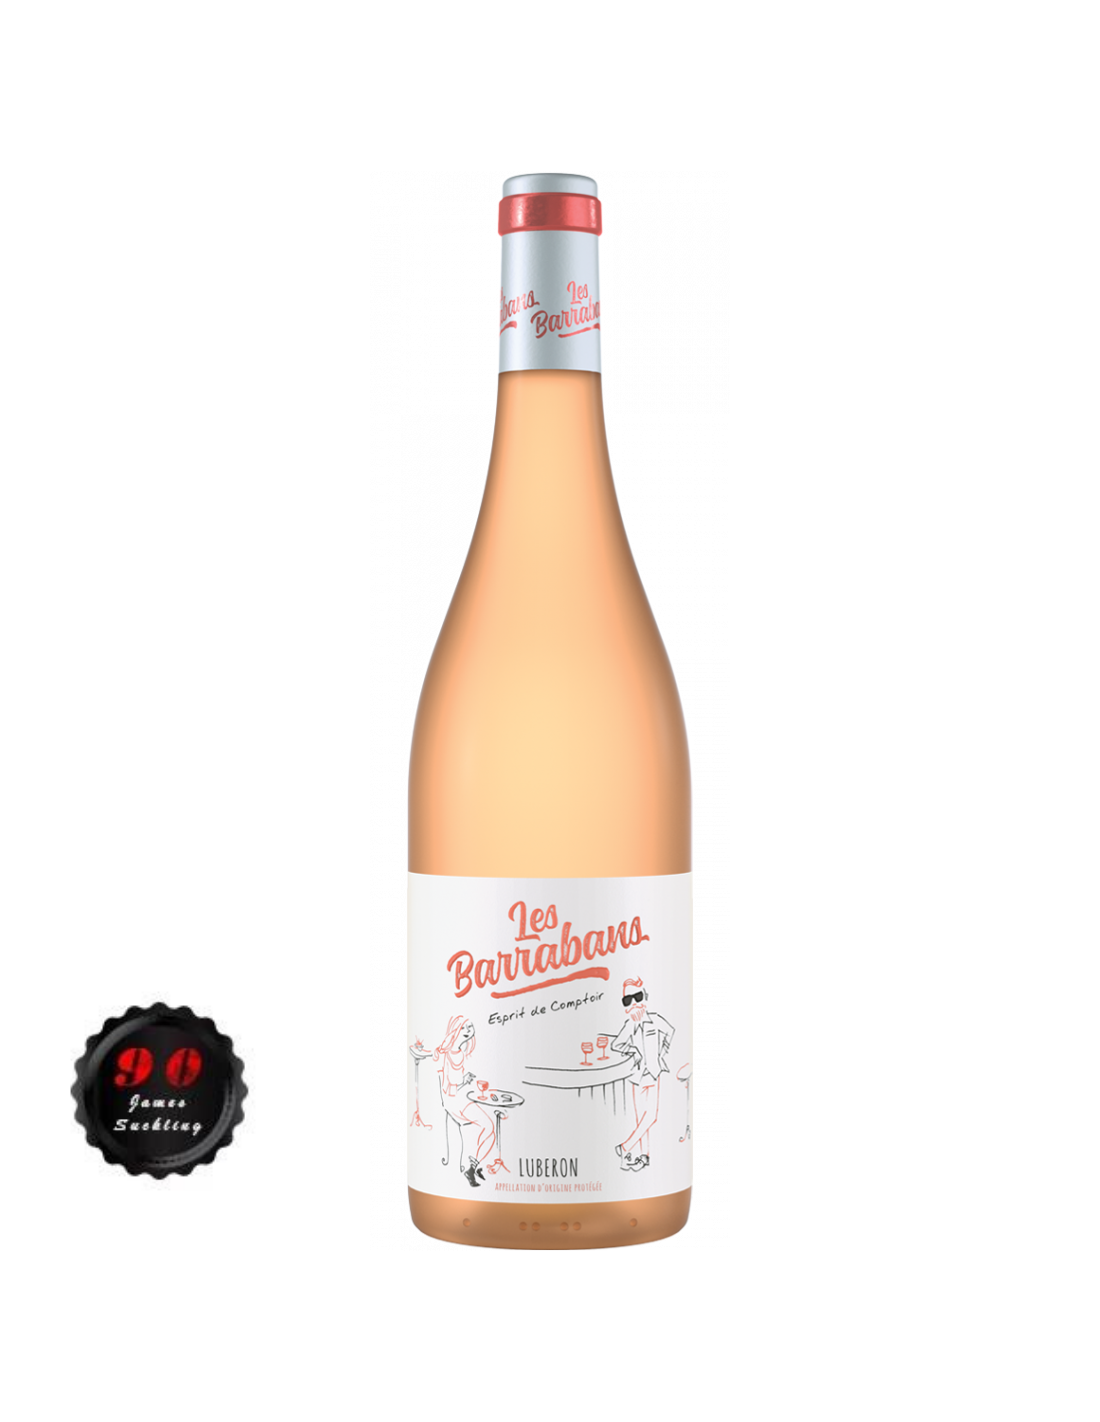 Vin roze sec Les Barrabans Luberon, 13% alc., 0.75L, Franta alcooldiscount.ro